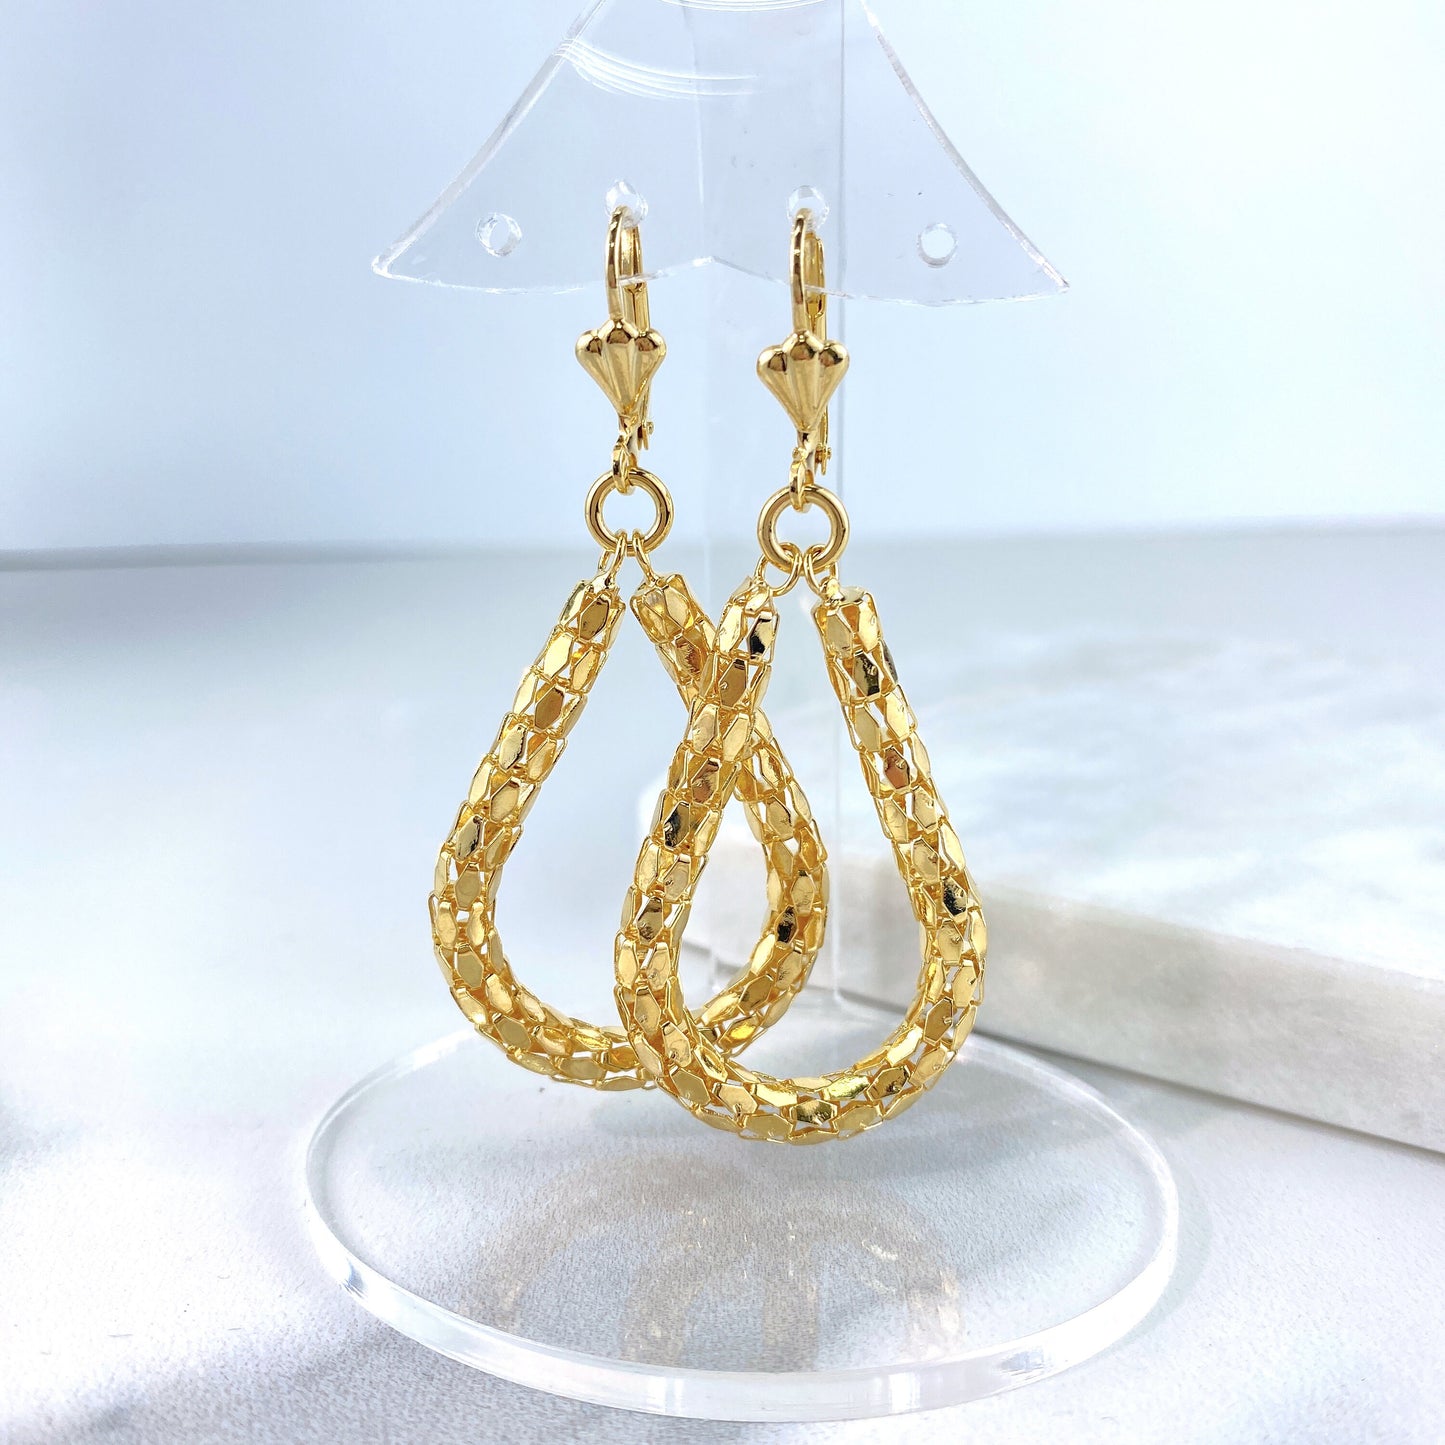 18k Gold Filled 4.4mm Popcorn Chain Oval Tear Shape Dangle Earrings Wholesale Jewelry Making Supplies